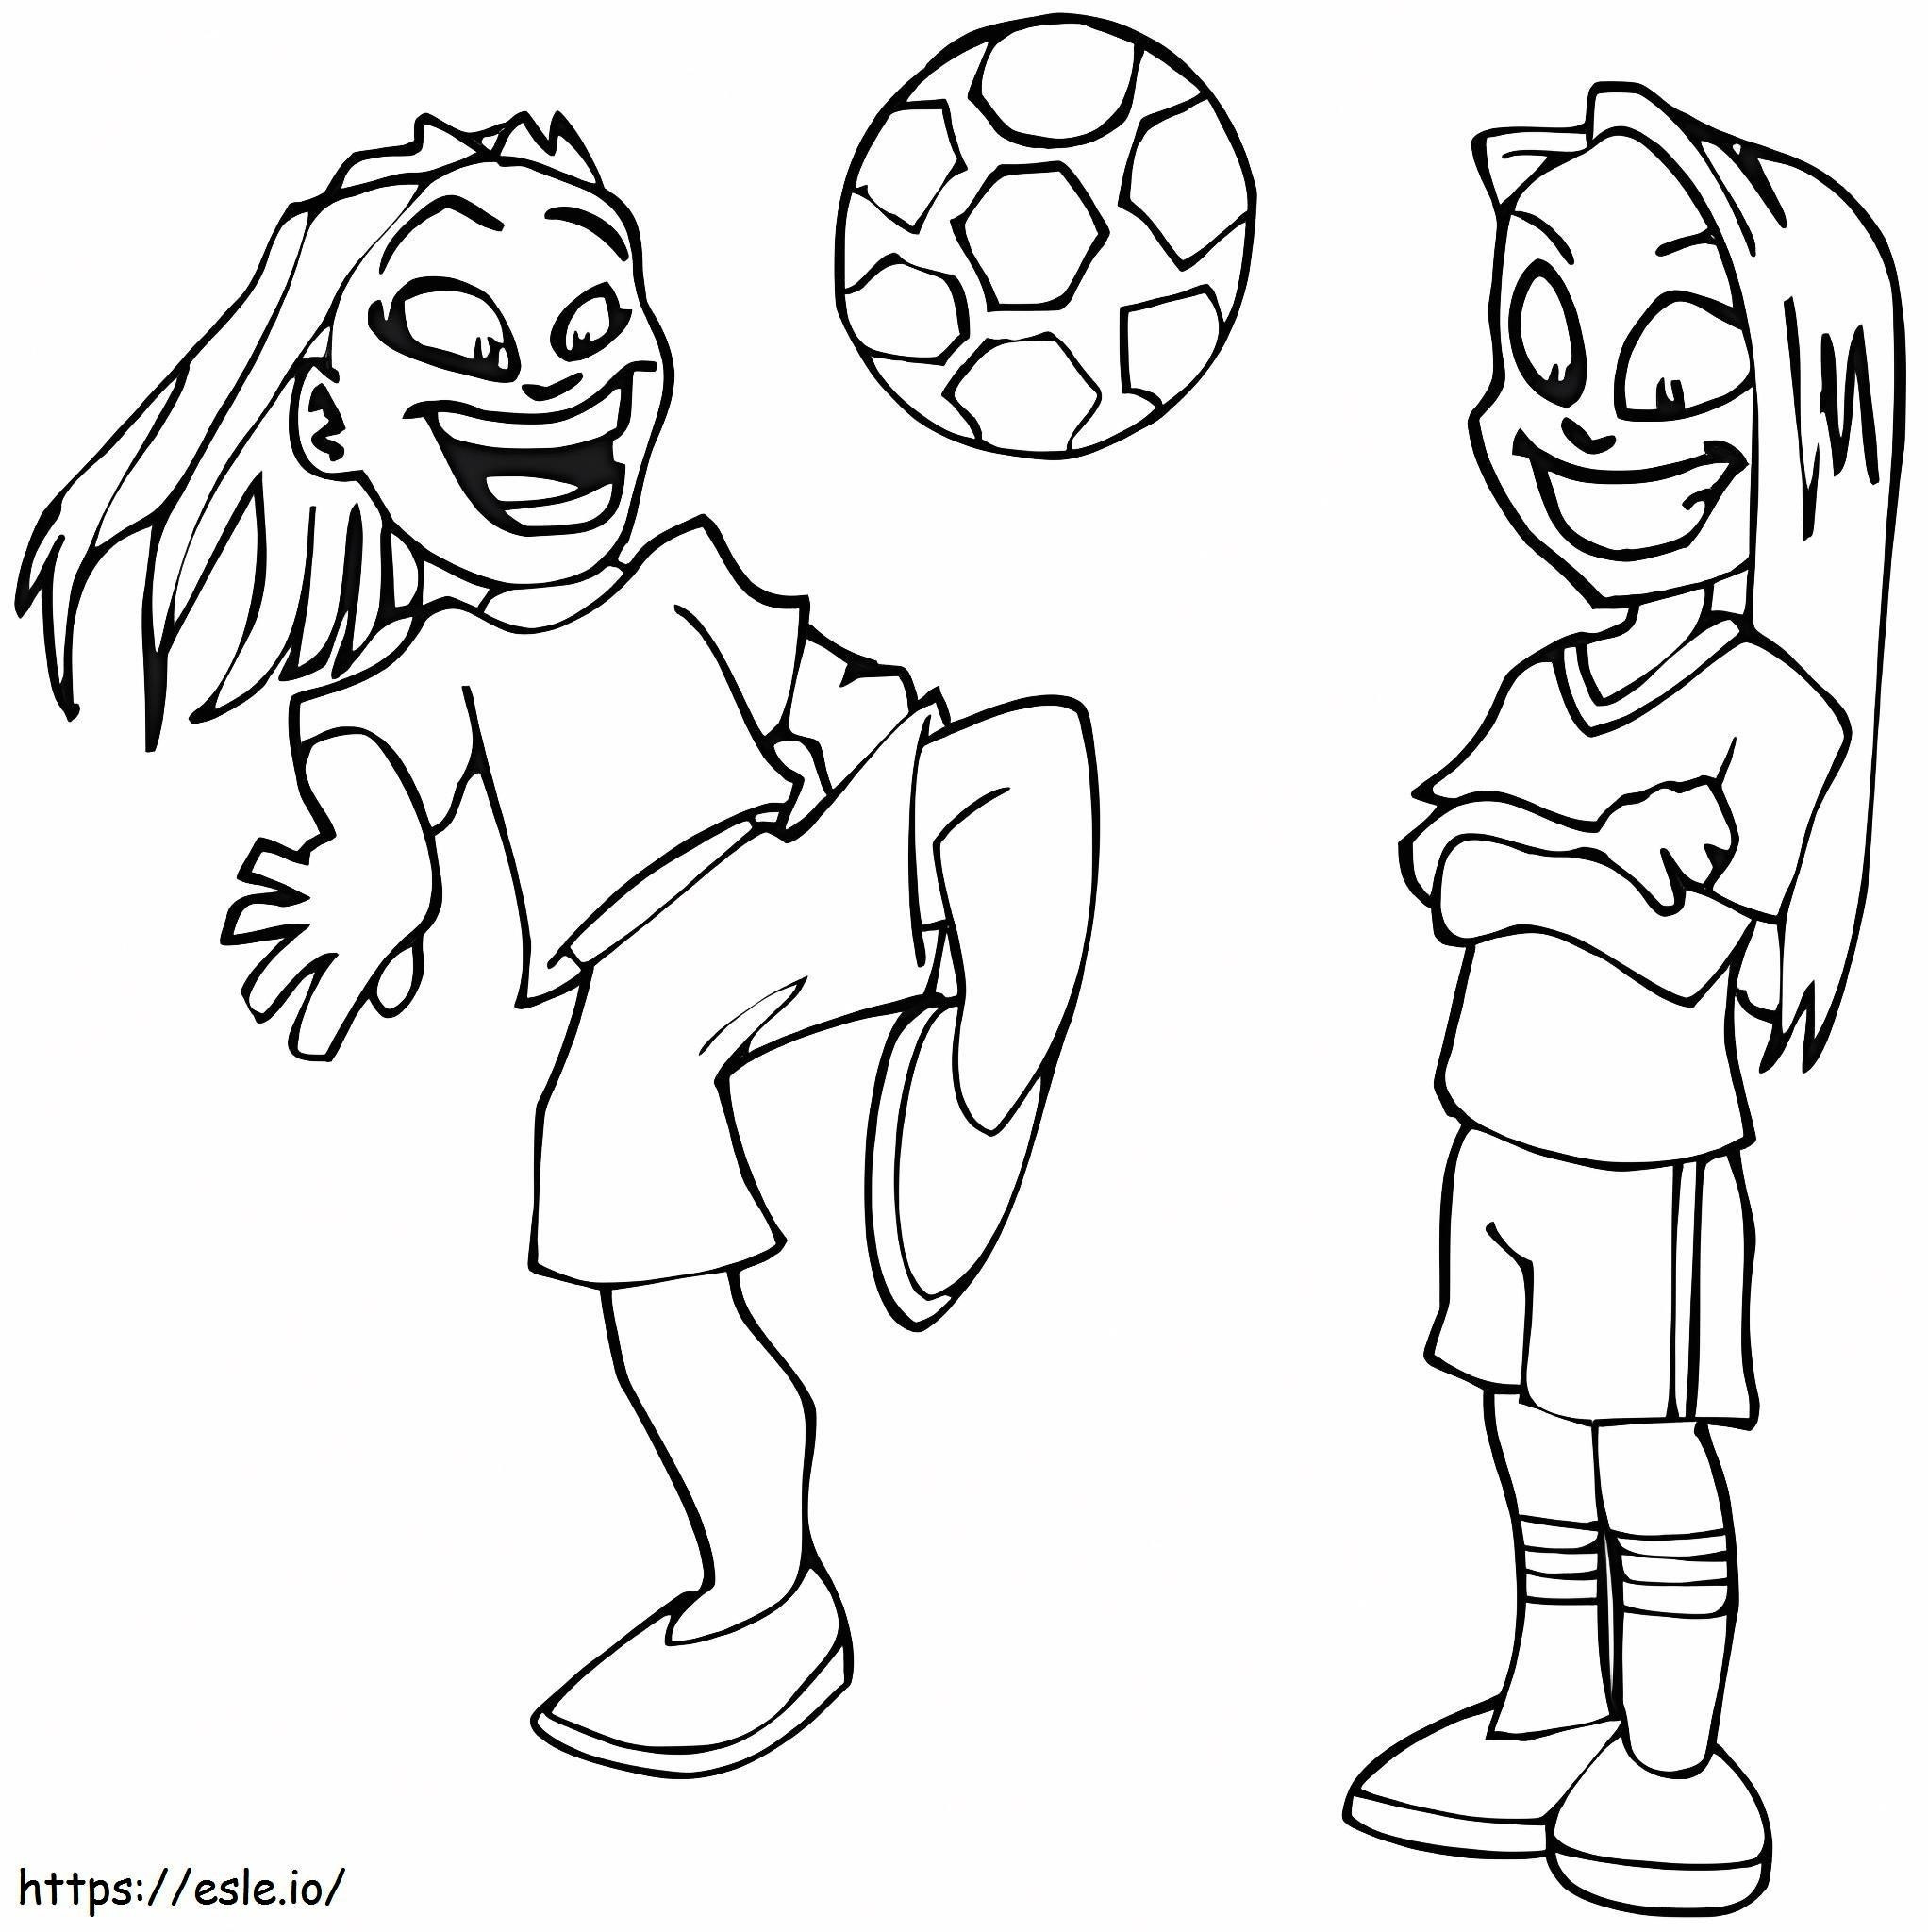 Dos niñas jugando al fútbol para colorear